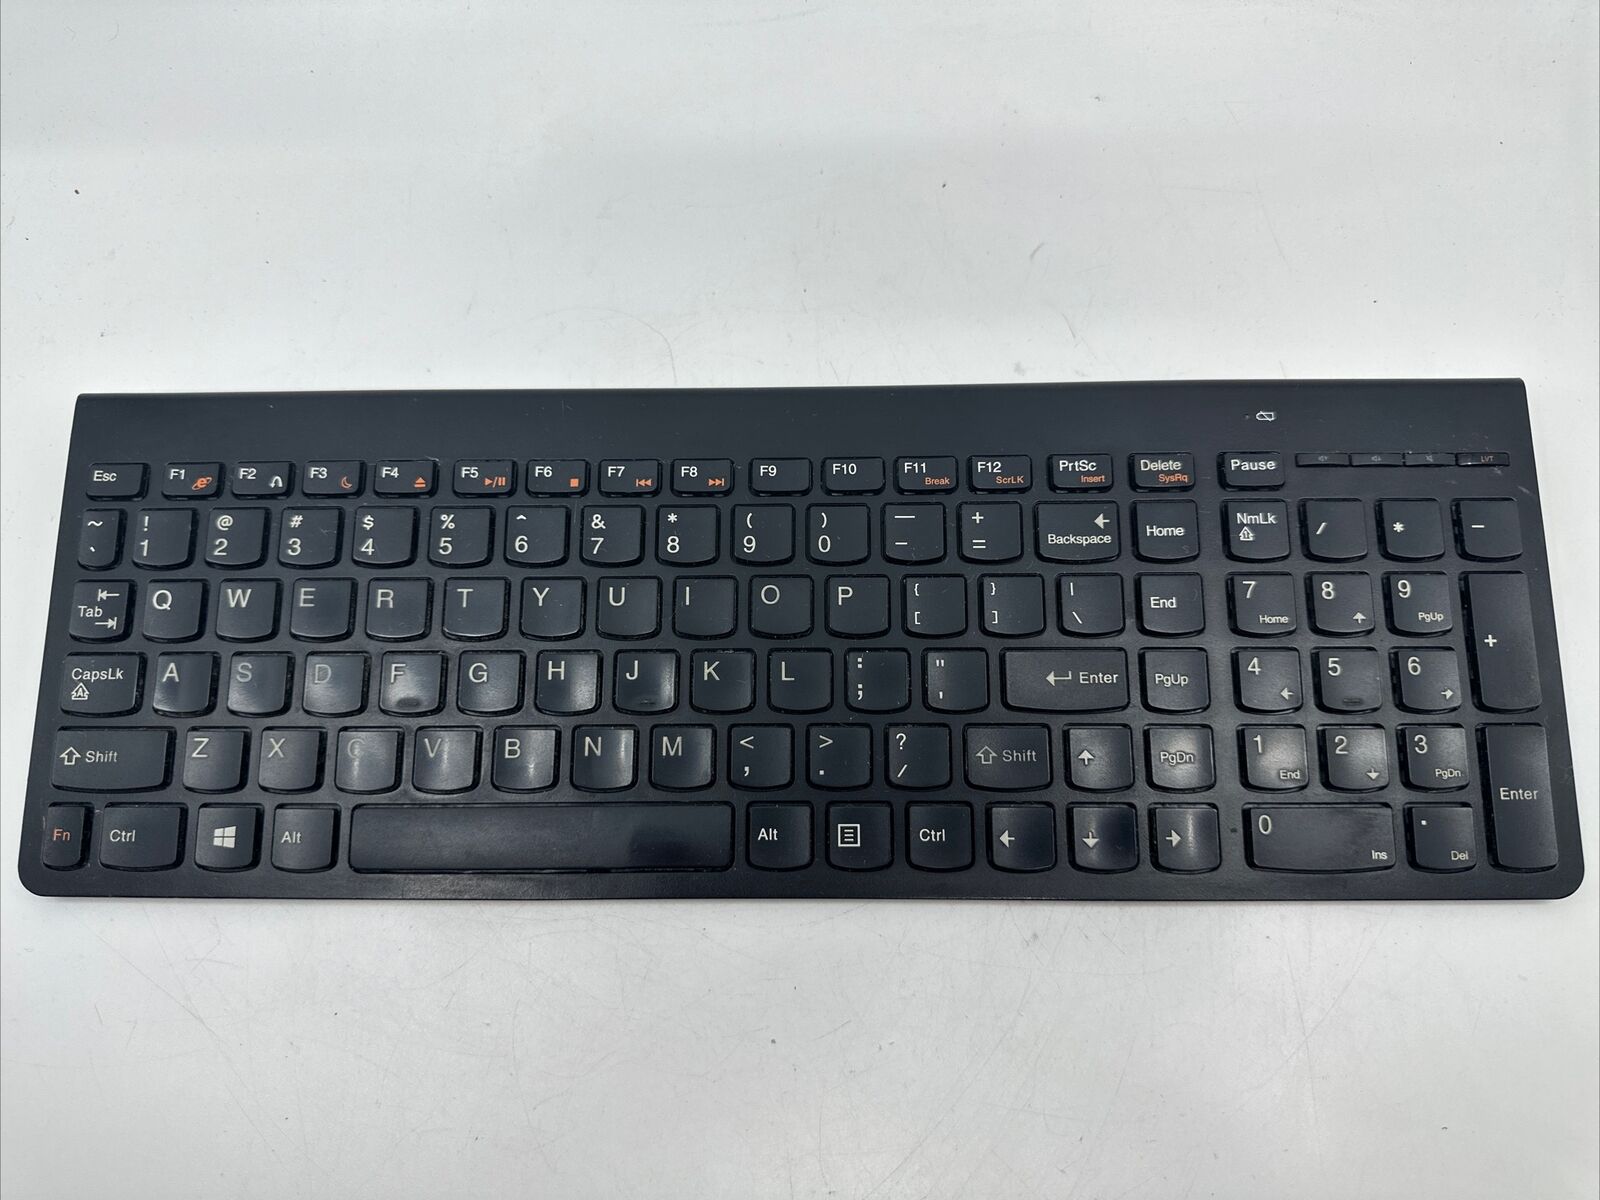 Lenovo SK-8861 Ultraslim PC BLACK Wireless Keyboard - Receiver Not Included S499